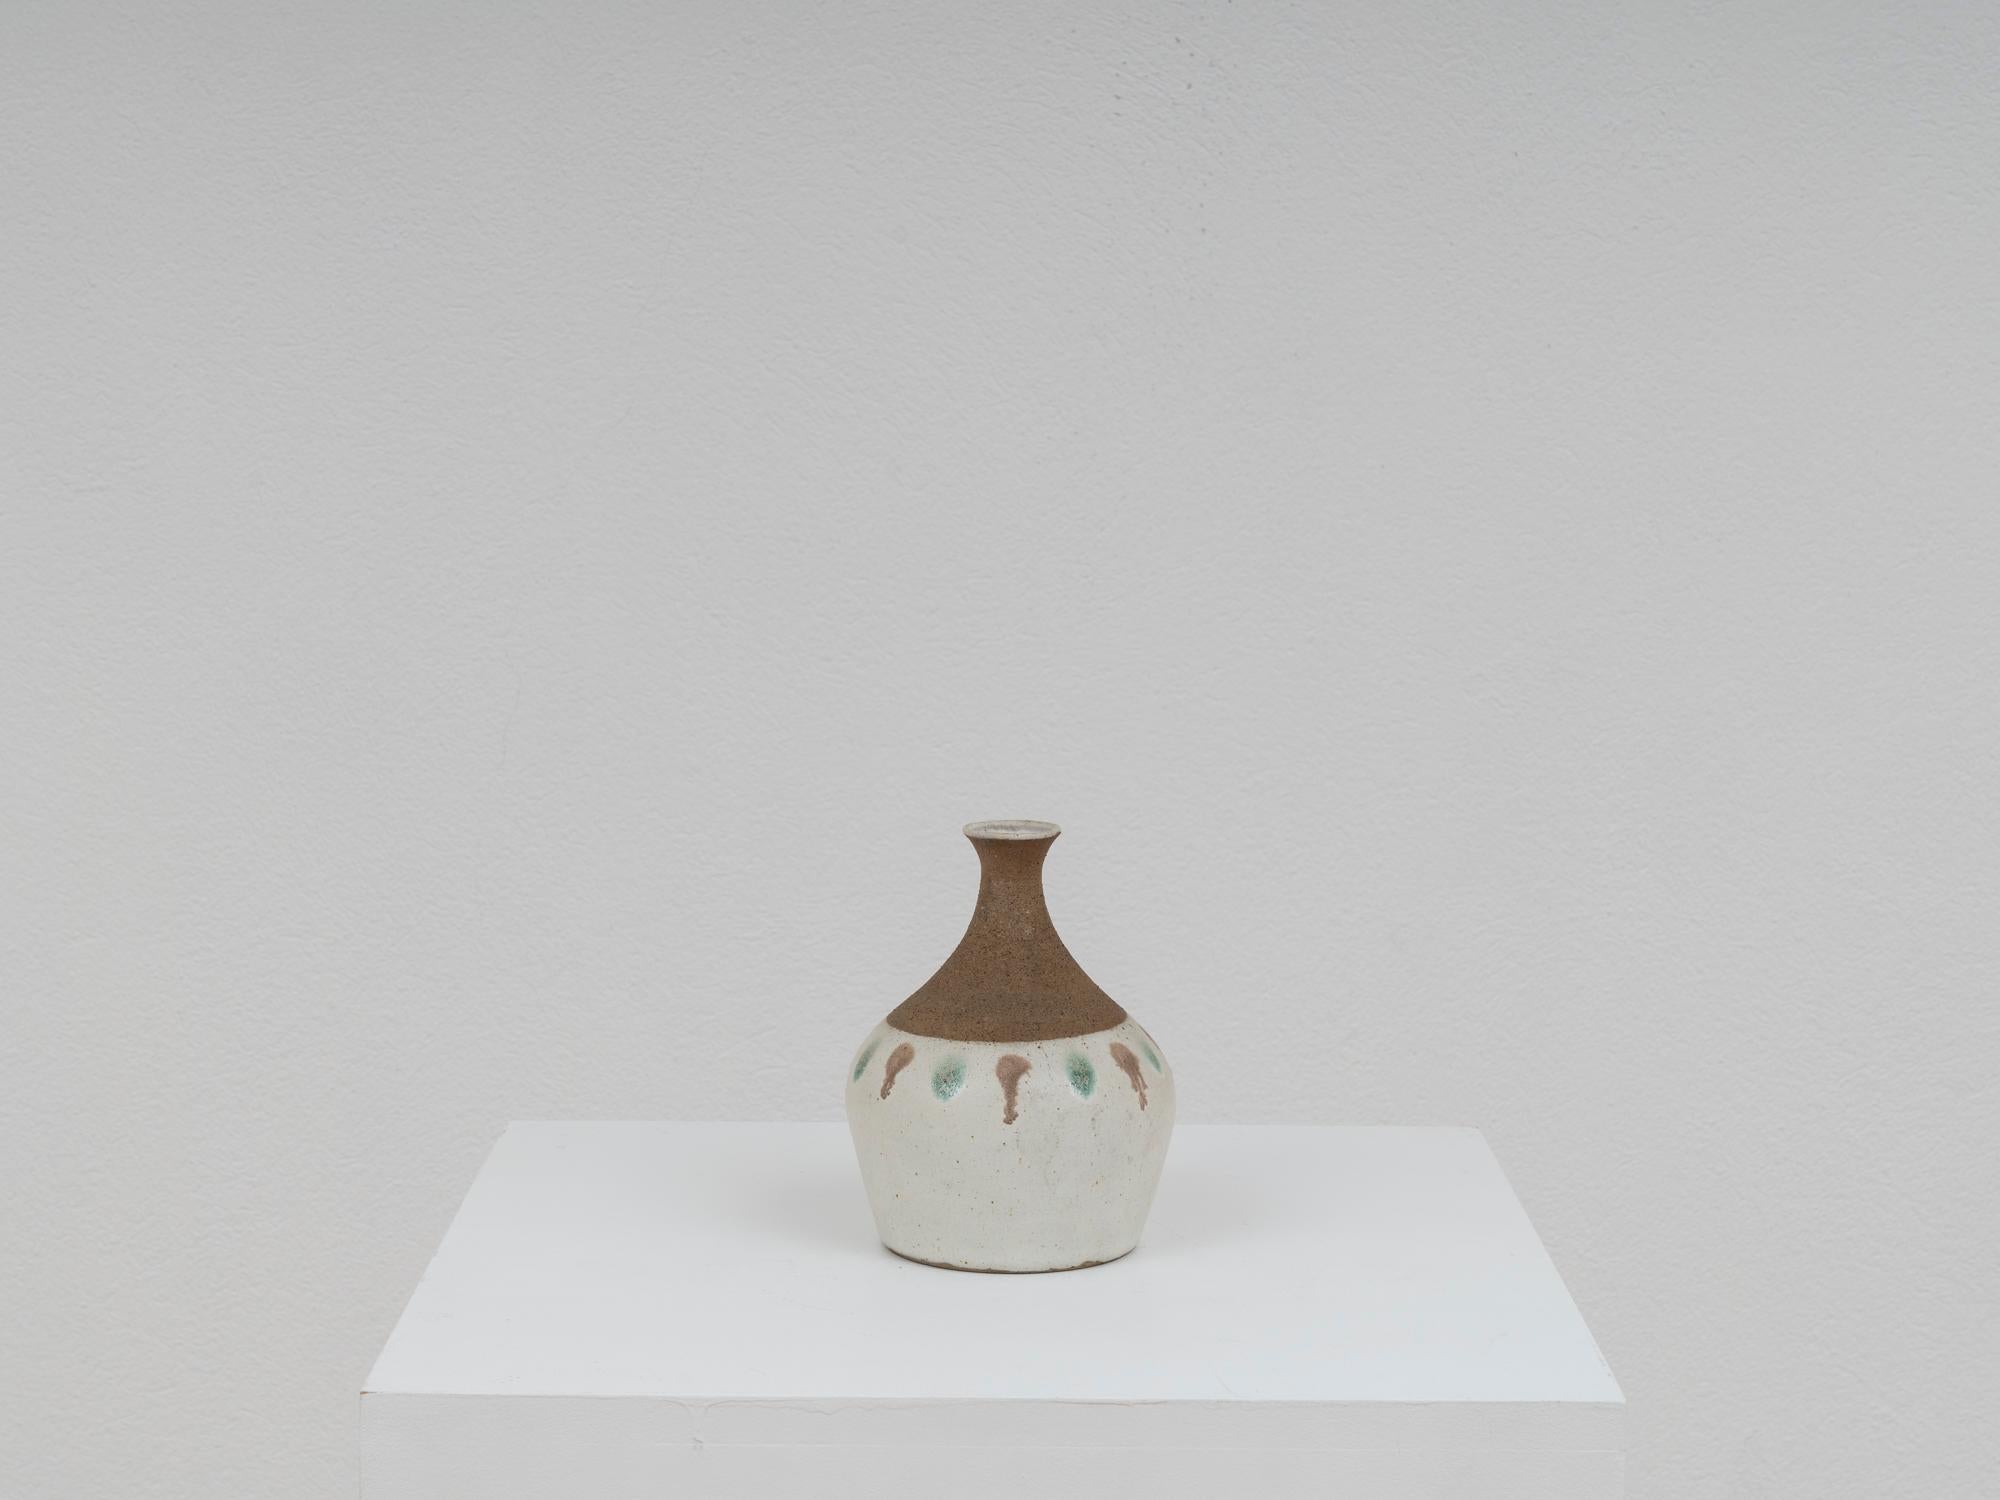 Charmante Vase des Keramikmeisters Bruno Gambone aus den 1970er Jahren. Sie ist in Erdtönen mit einem Hauch von Türkis gehalten und hat eine fühlbare Oberfläche, die am Hals rau und am Boden glatt ist.
Das Stück bleibt in sehr gutem Vintage-Zustand.